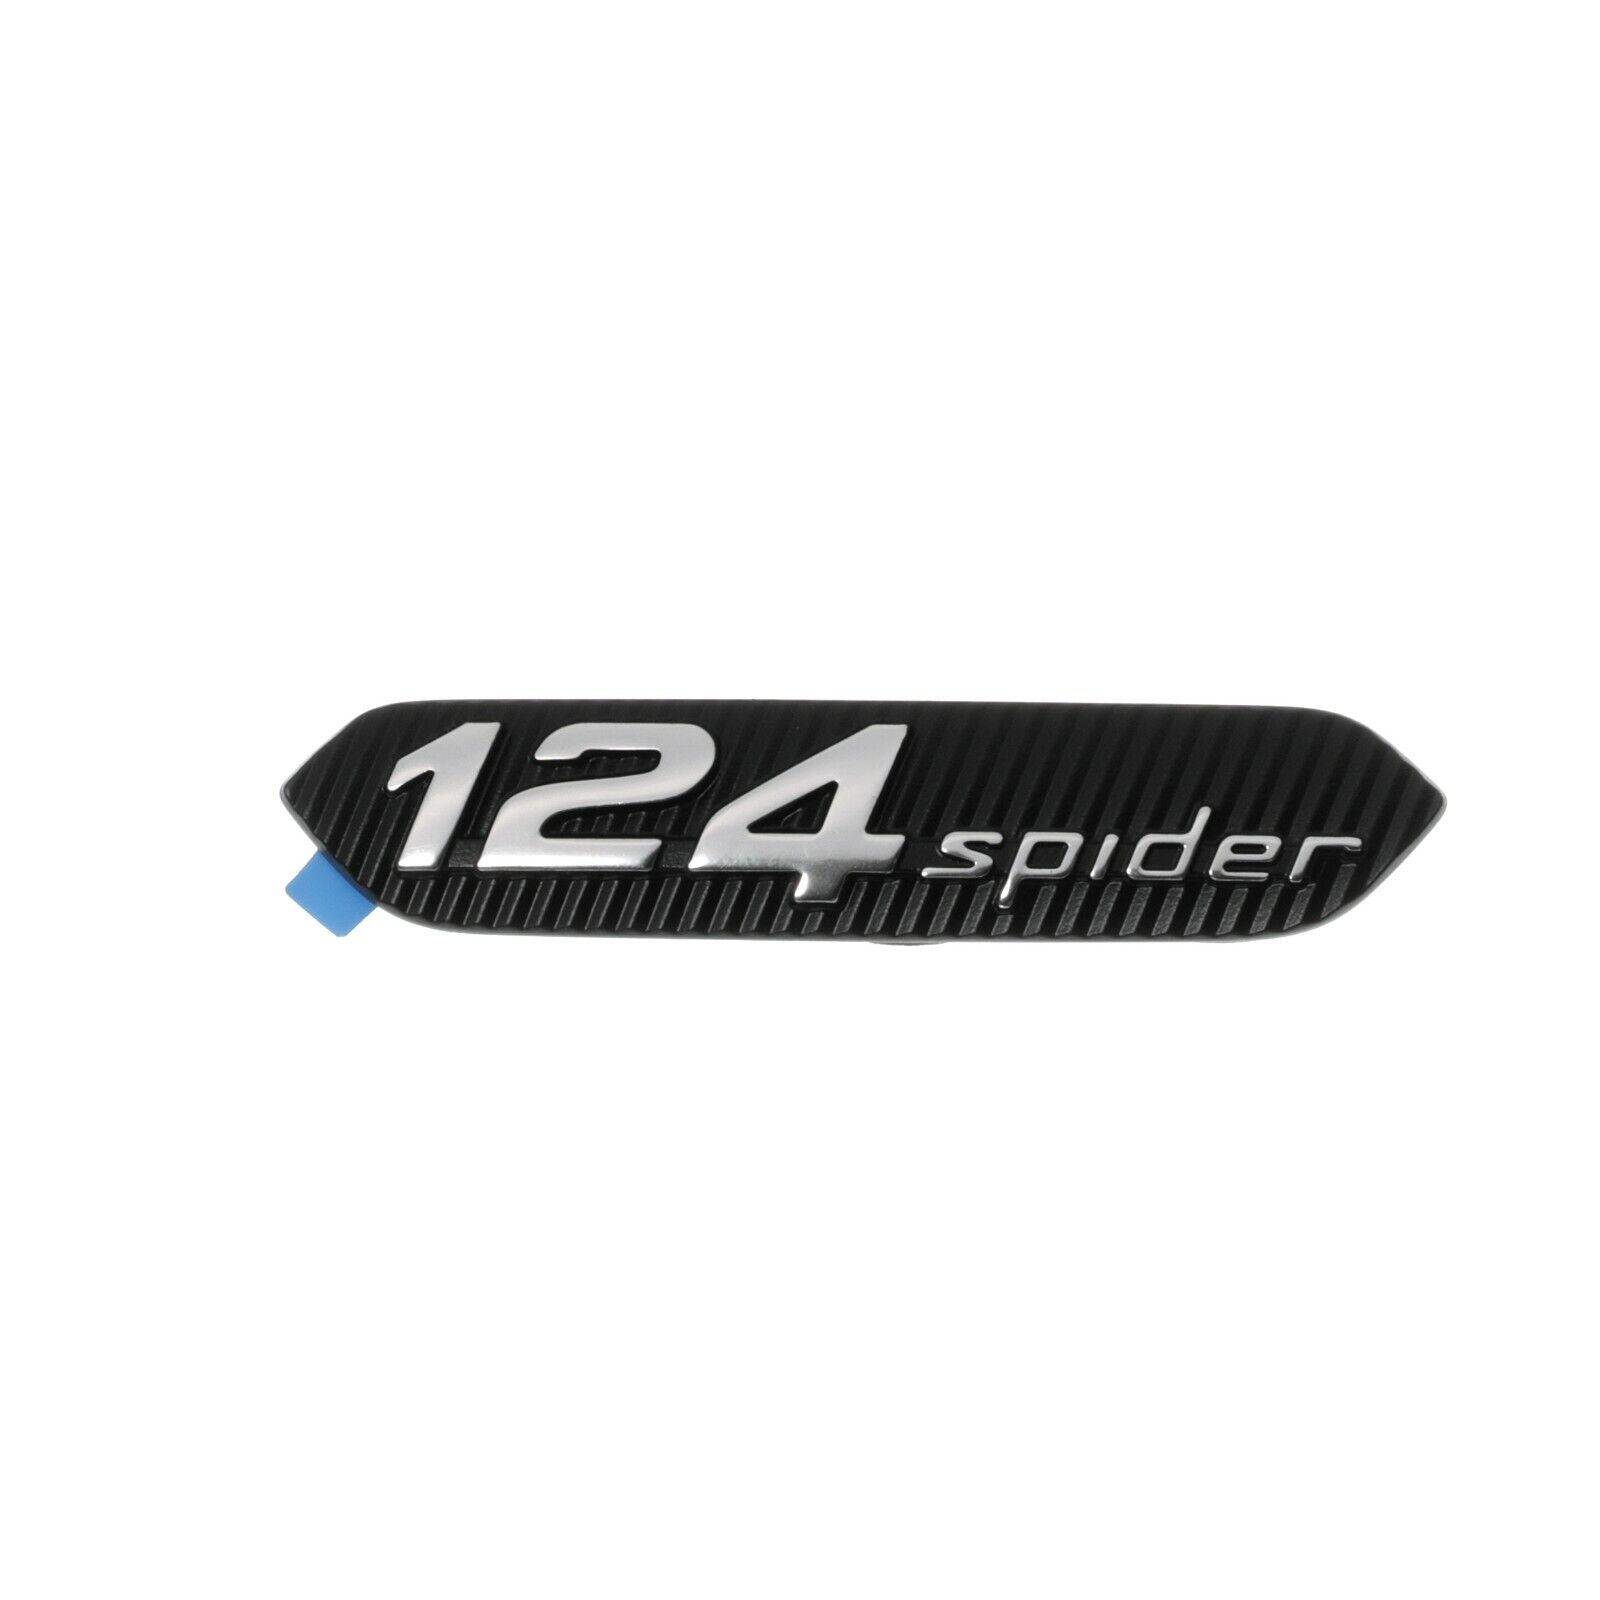 2017-2020 FIAT SPIDER 124 EMBLEM NAMEPLATE BADGE BLACK OEM MOPAR FIAT 82215037